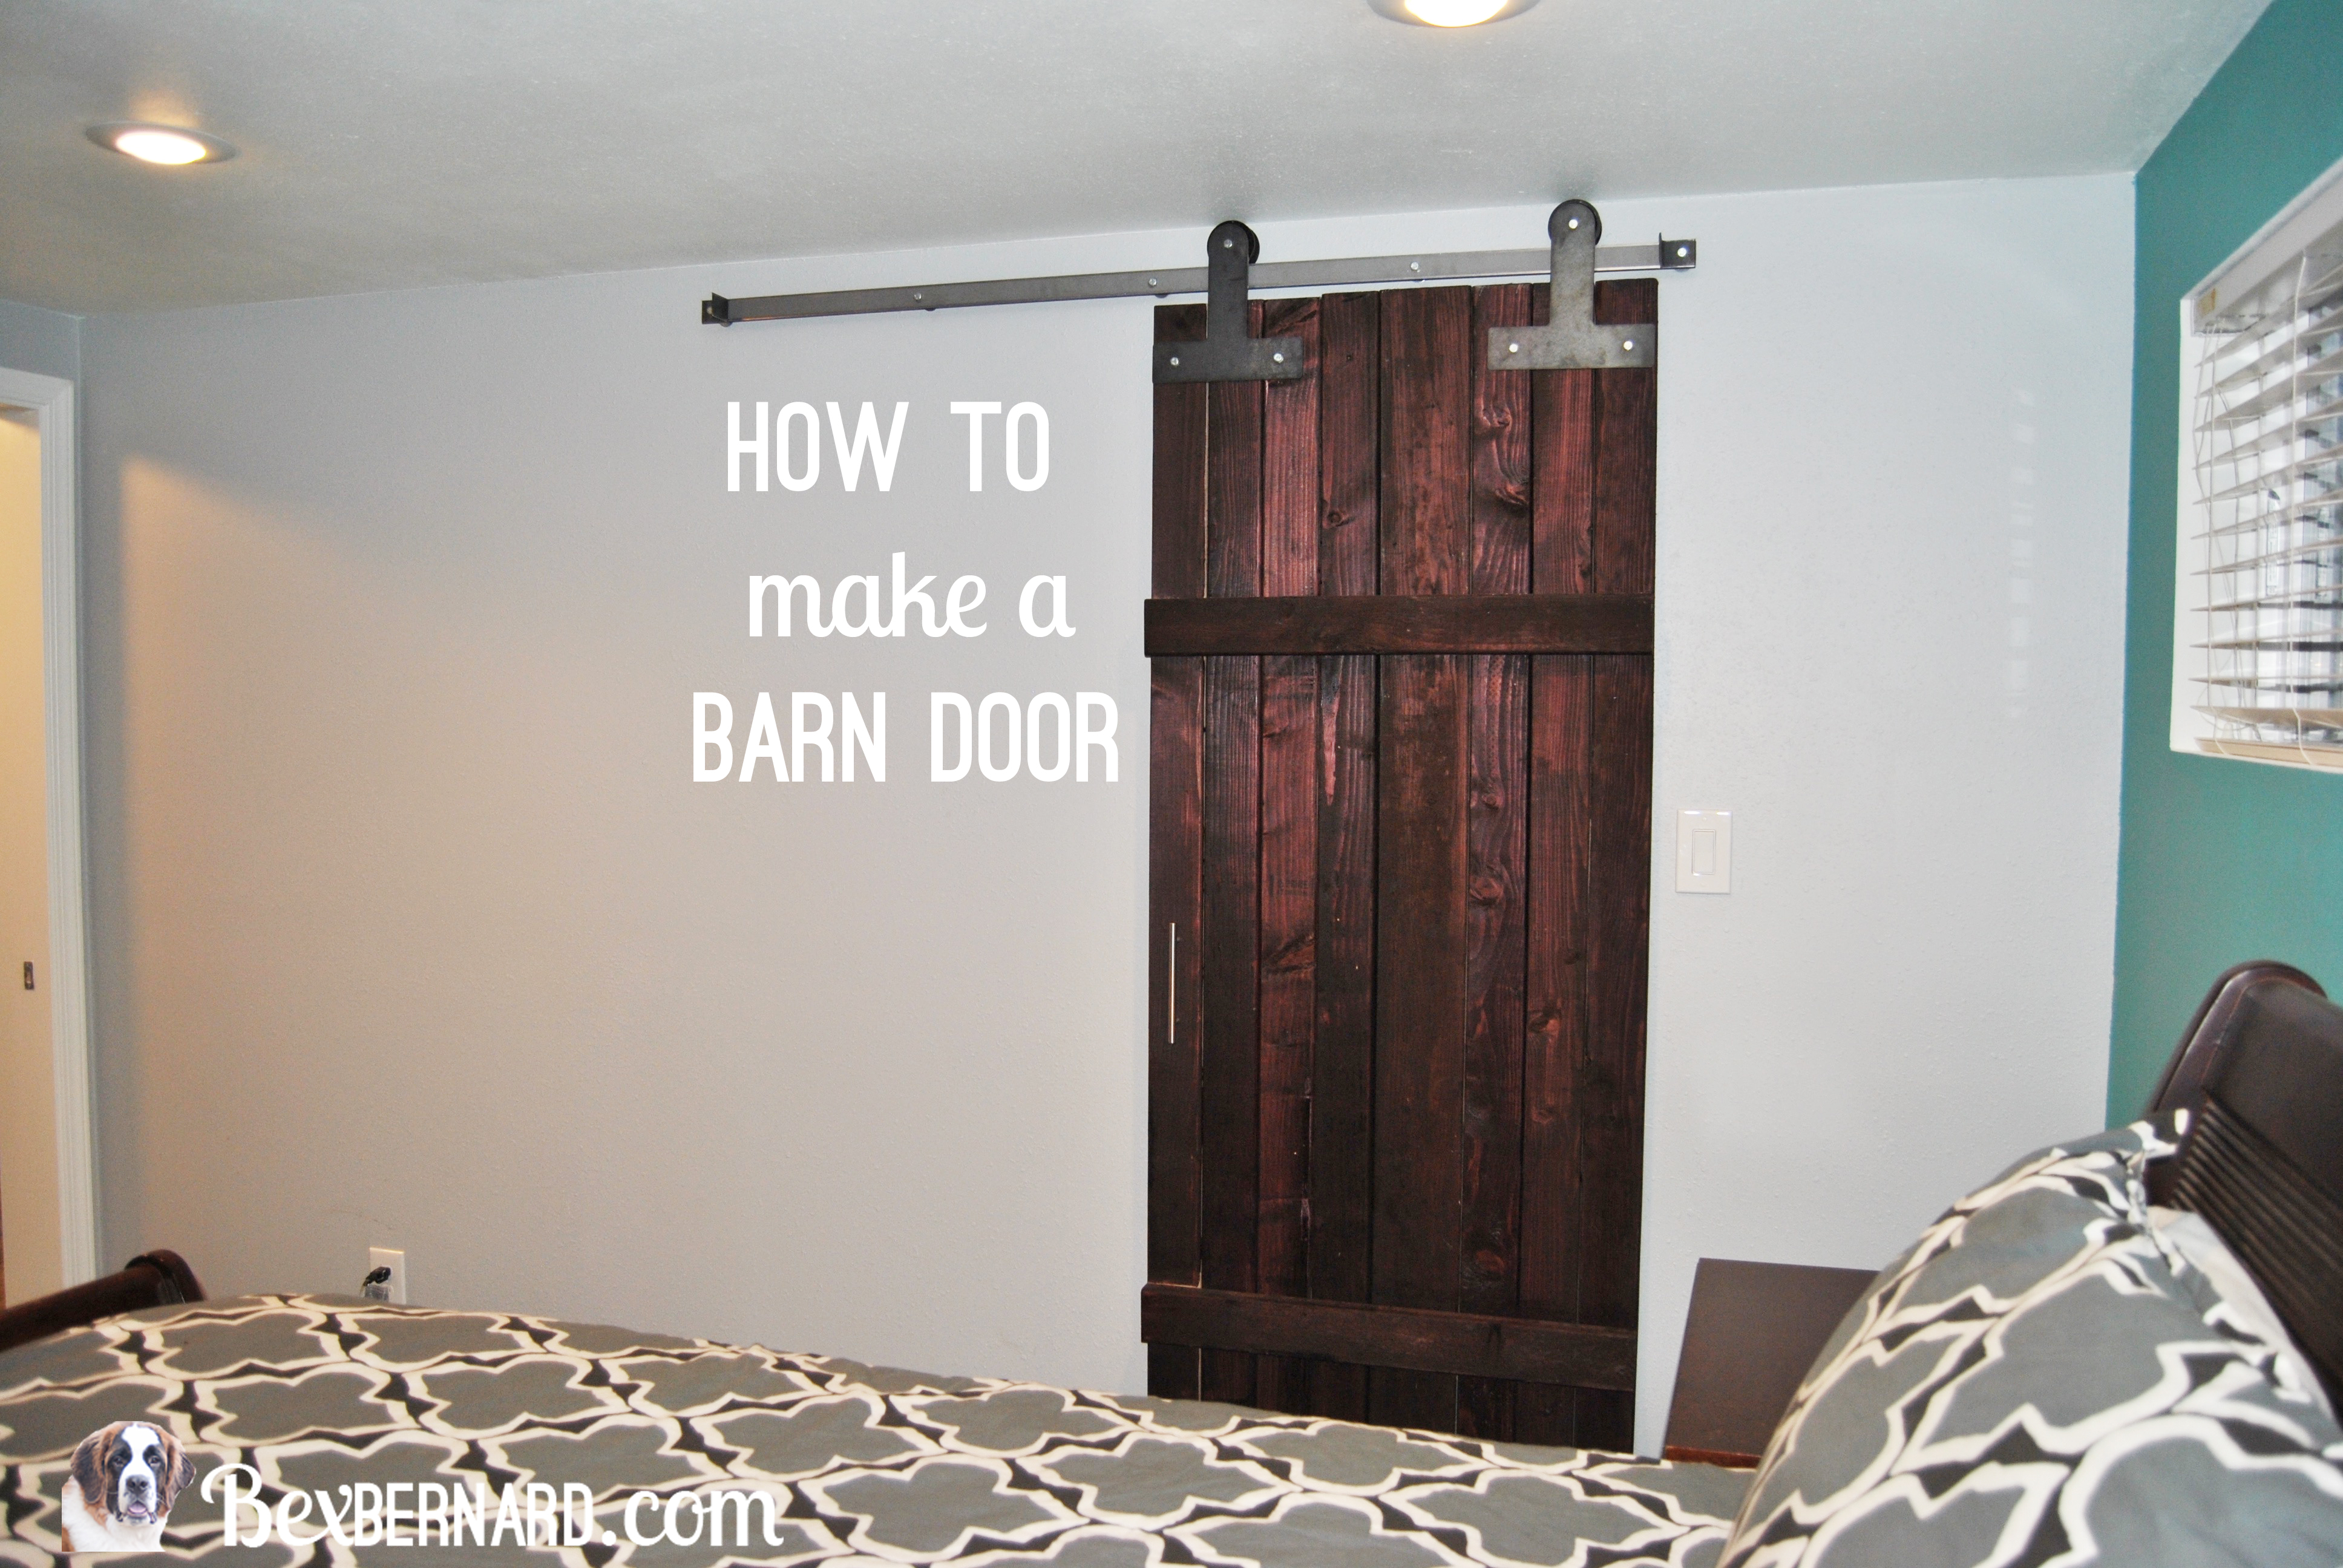 how to make a barn door. DIY sliding door. home improvement. wood decor for master bedroom. | bexbernard.com